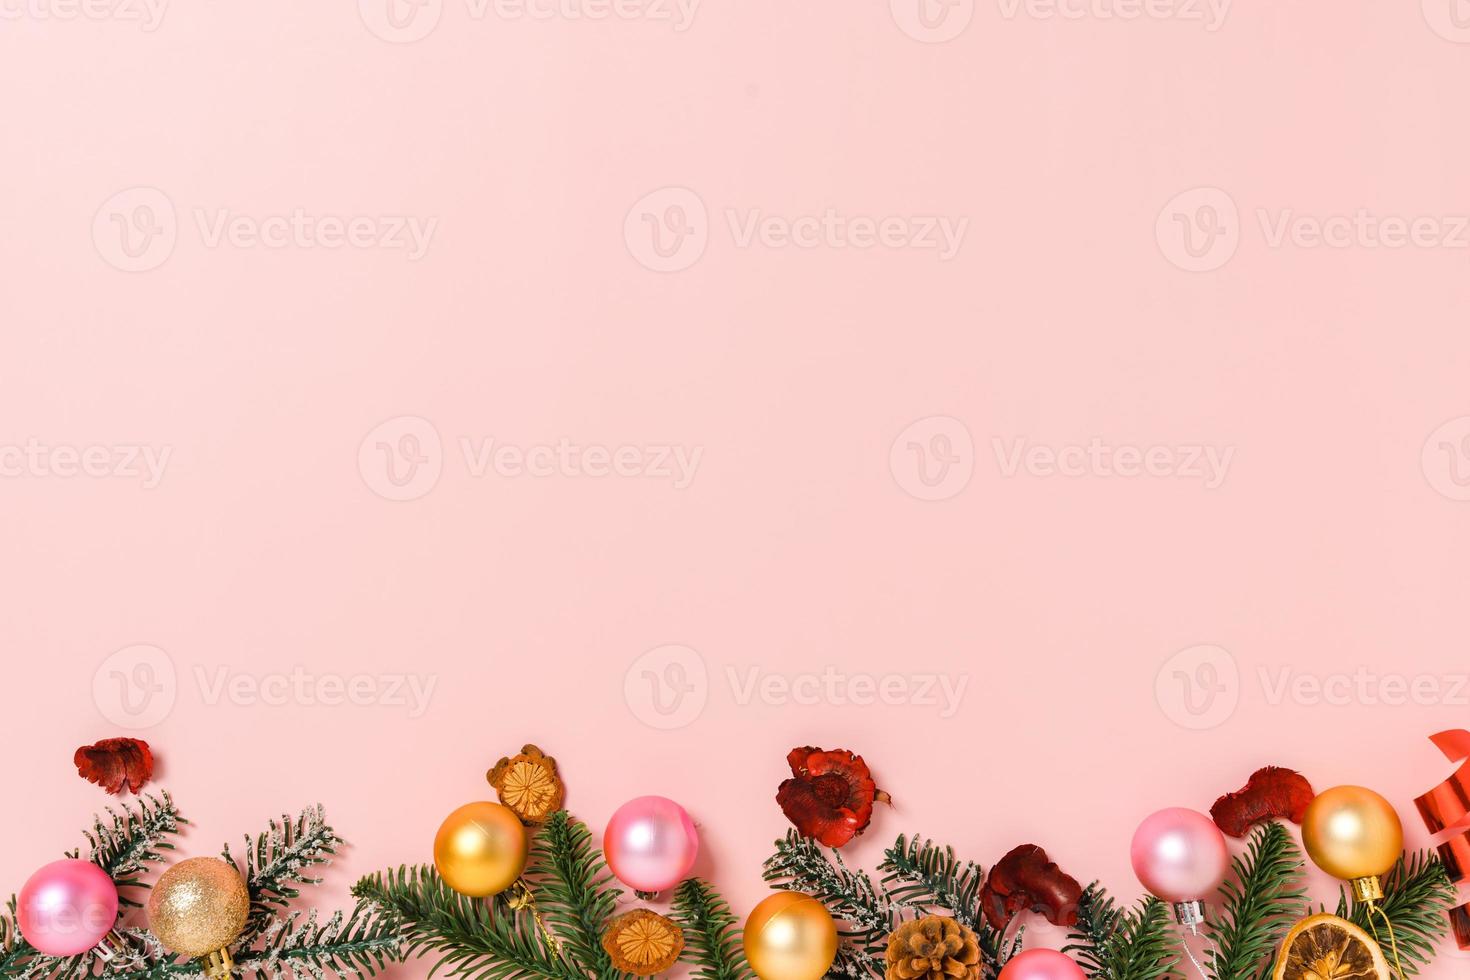 plano creativo mínimo de composición tradicional navideña y temporada navideña de año nuevo. vista superior decoraciones navideñas de invierno sobre fondo rosa con espacio en blanco para texto. copie la fotografía del espacio. foto